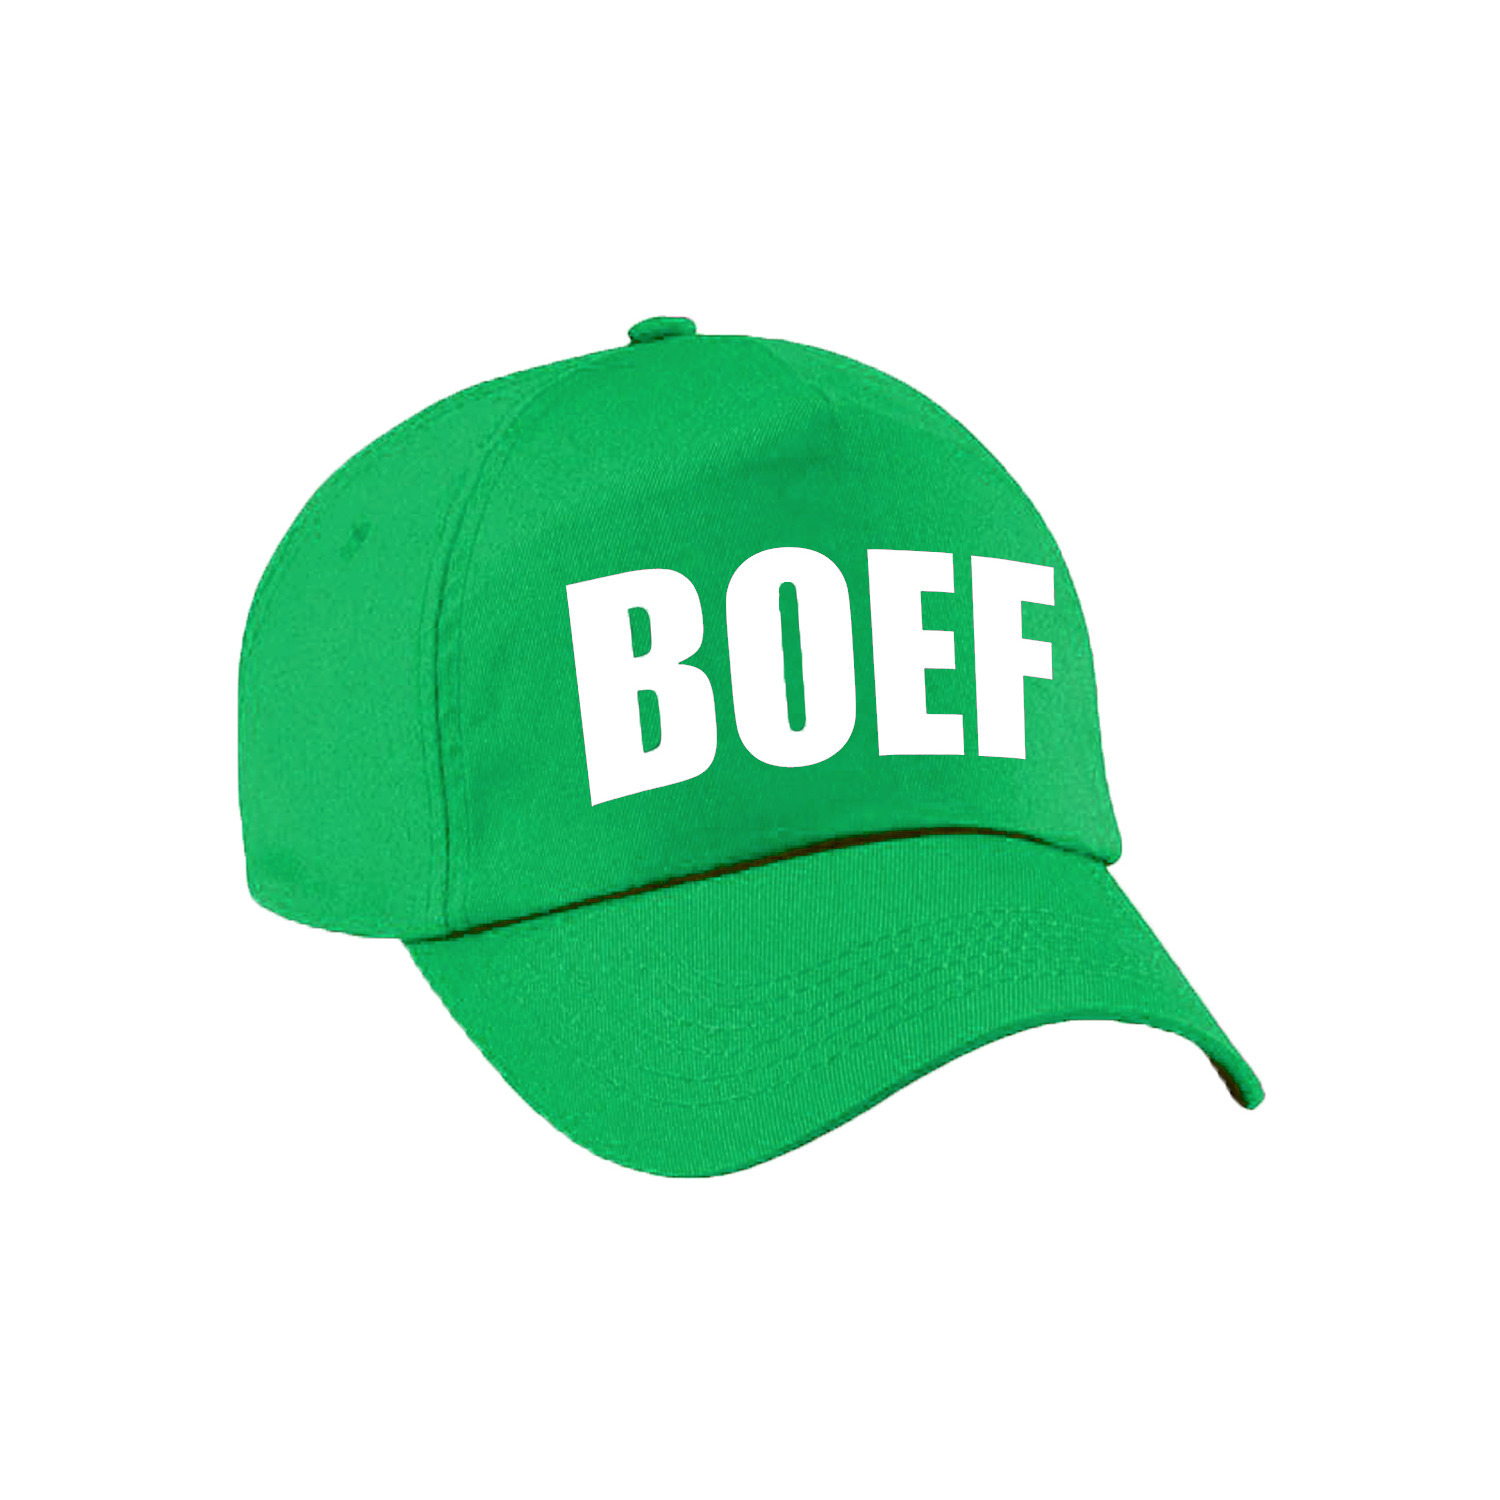 Groene Boef verkleed pet-cap voor volwassenen